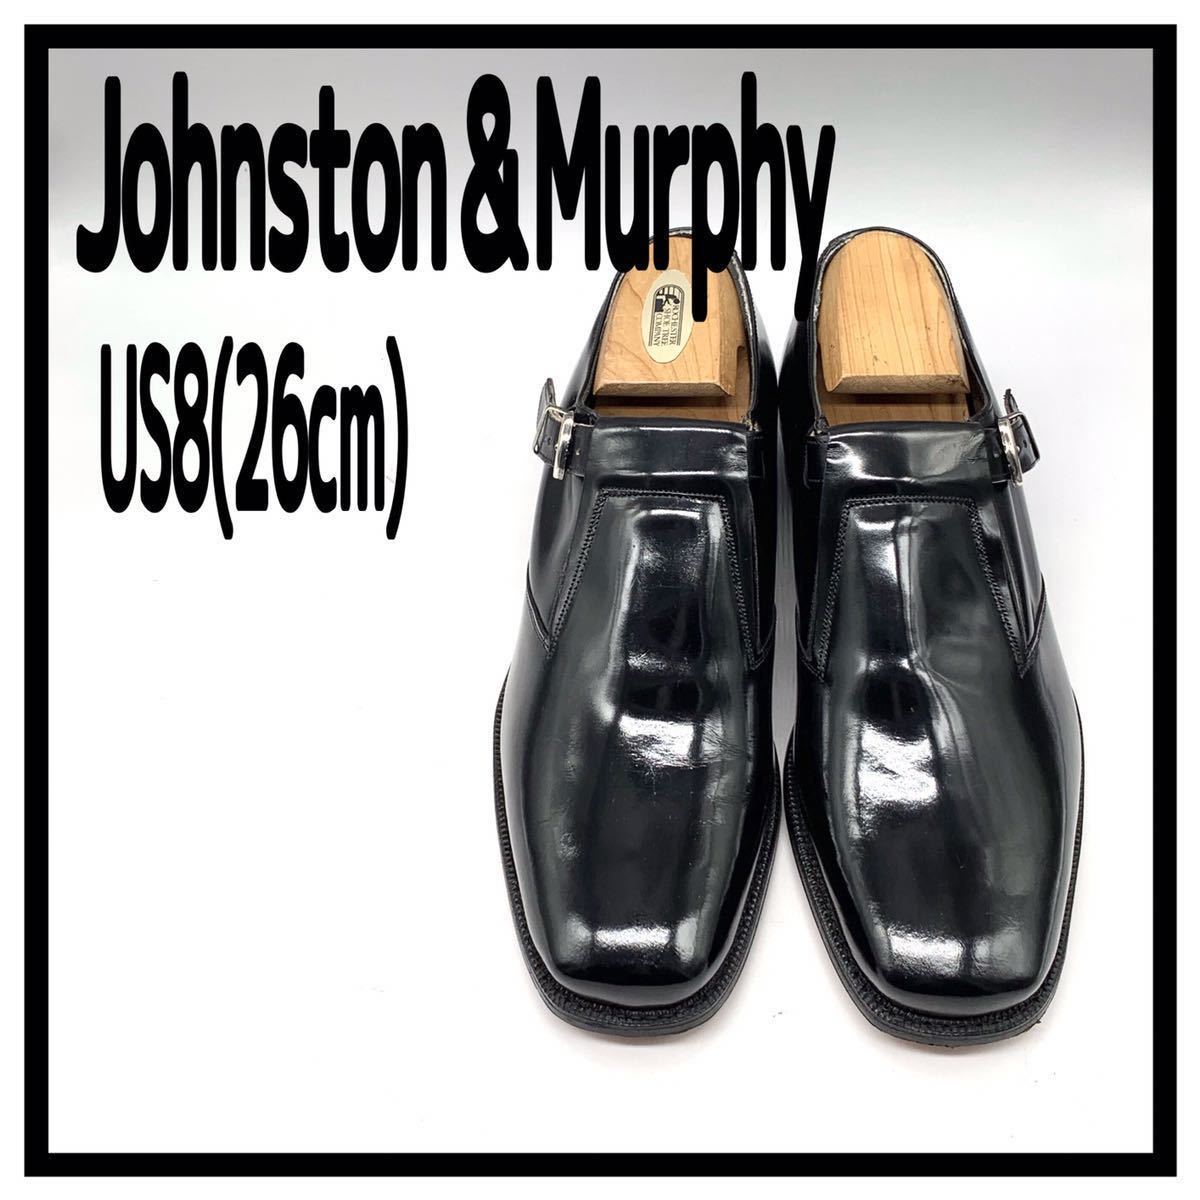 Johnston＆Murphy (ジョンストンアンドマーフィー) アリストクラフト ドレスシューズ モンクストラップ USA製 レザー 黒 US8 26cm 革靴